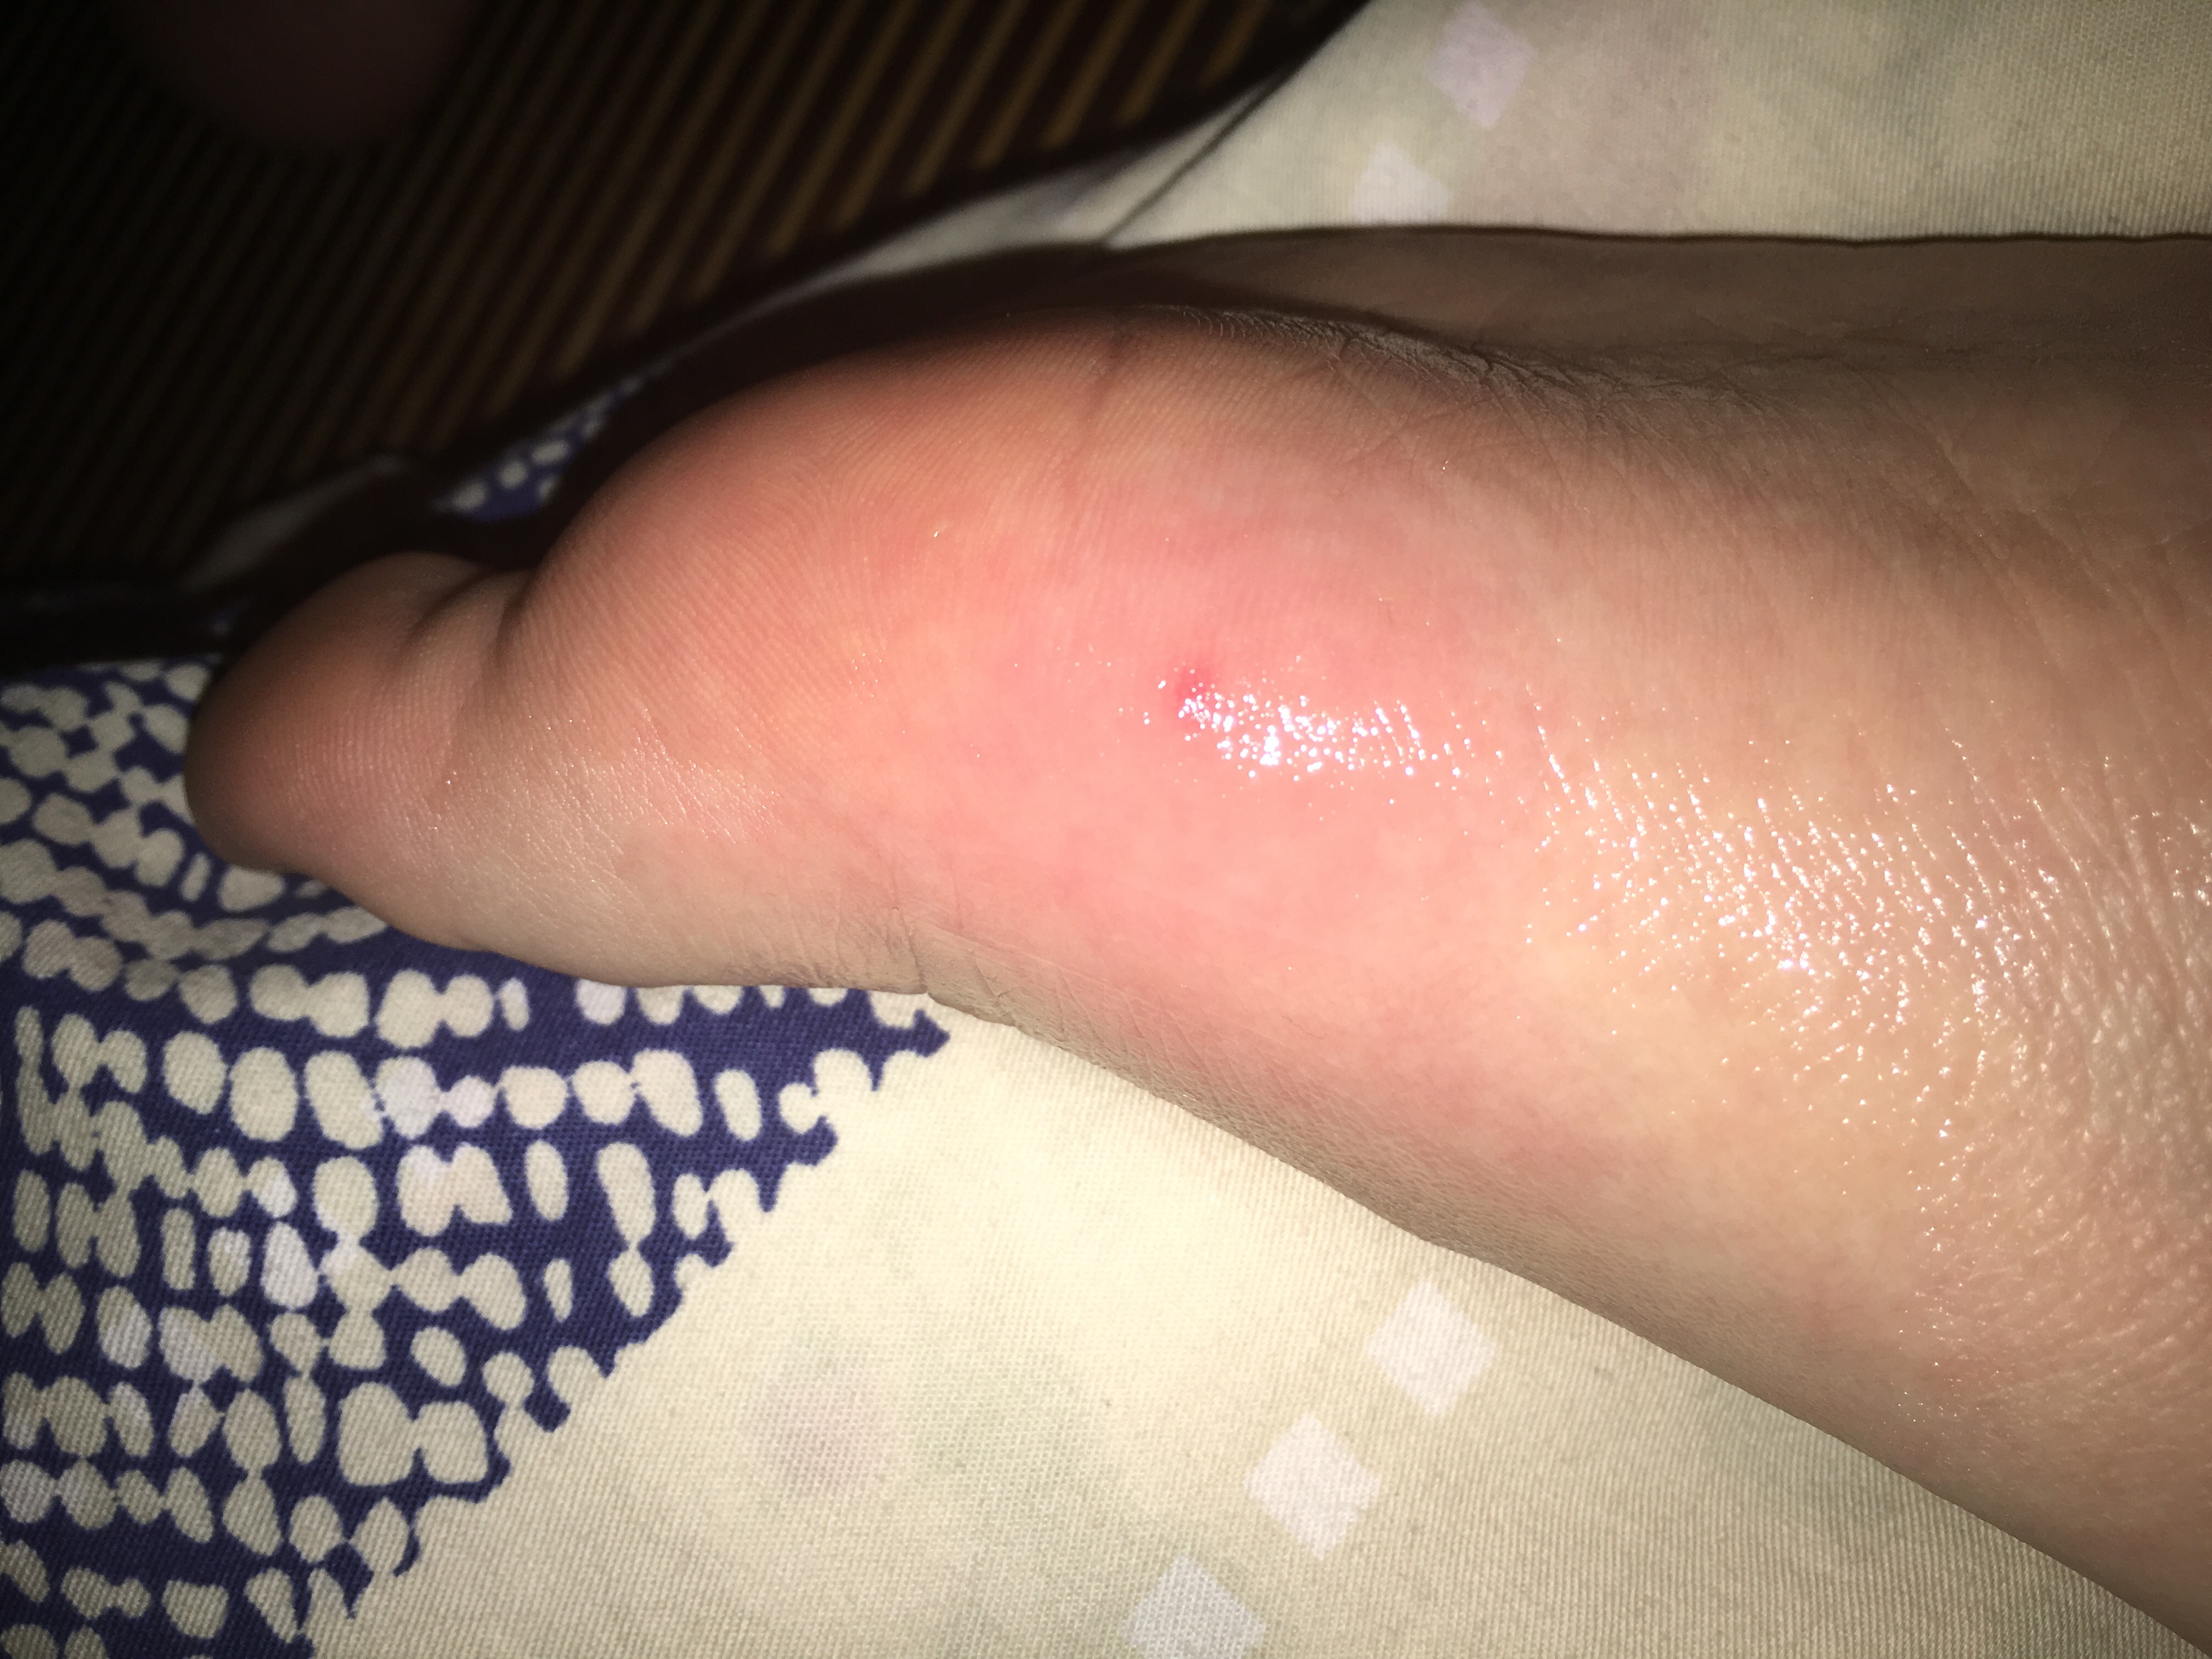 前天被蚊子咬脚底后,今天出现疼痛肿淤血痒.只有中间疼,旁边没